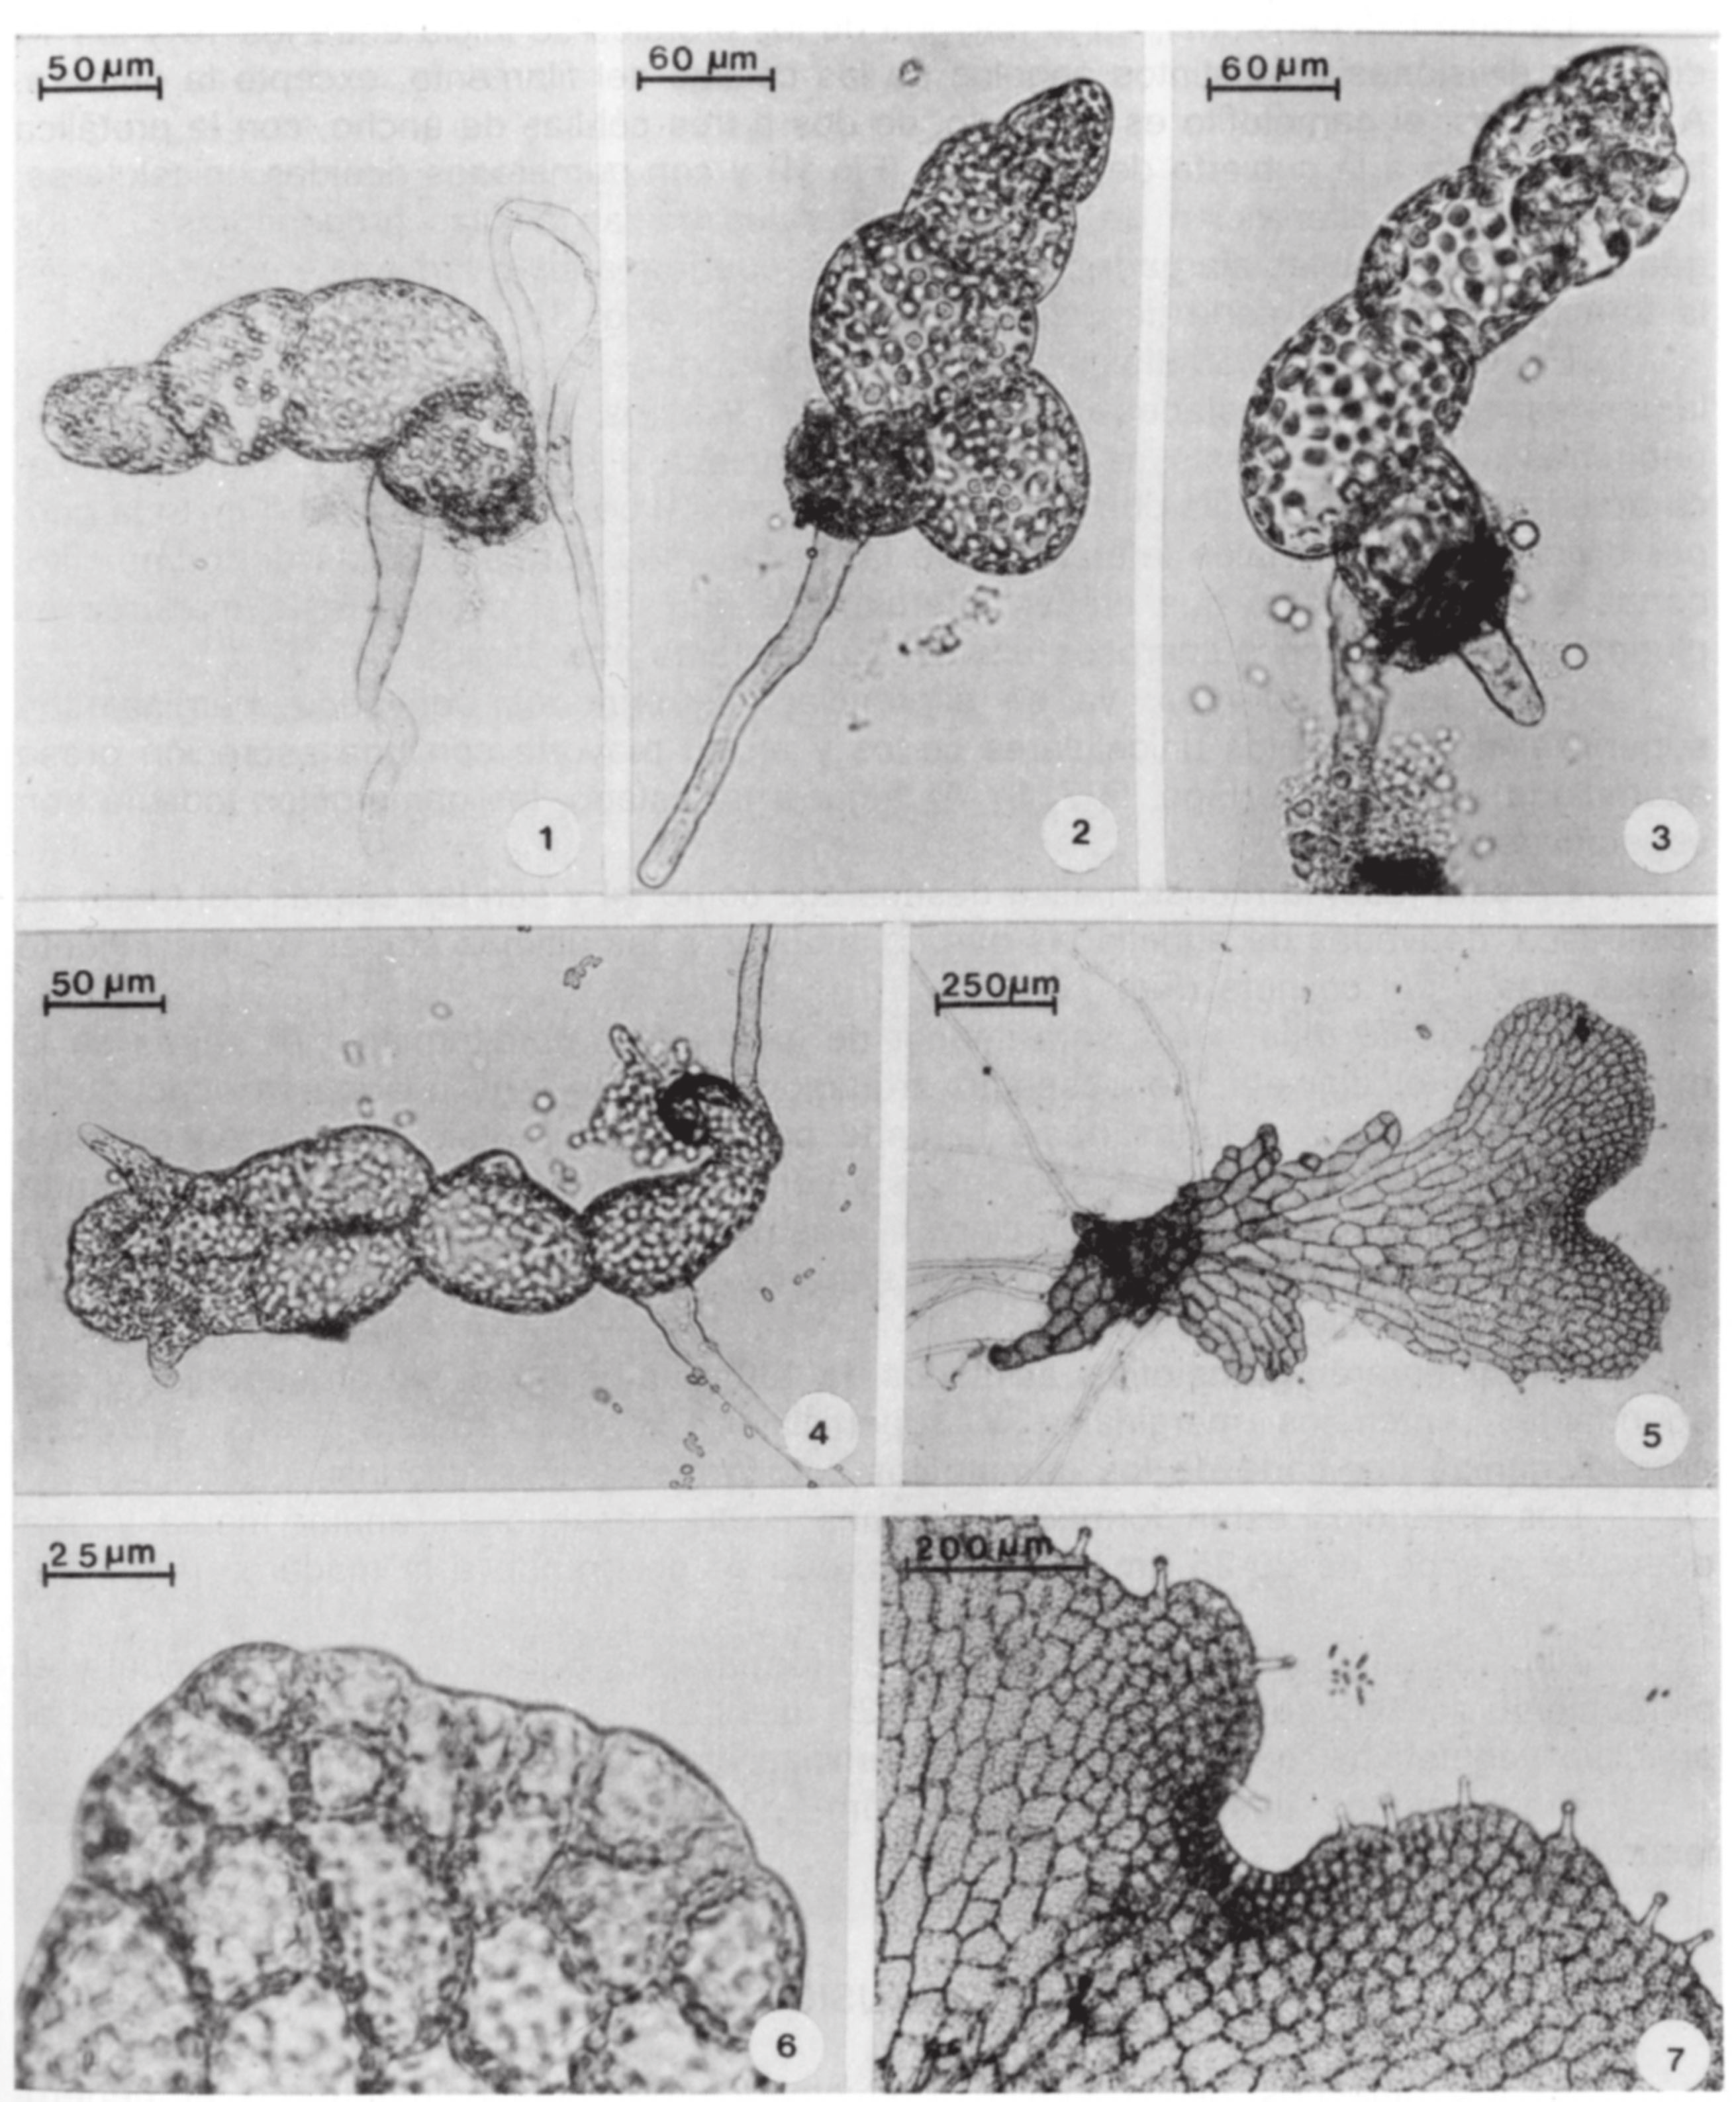 Pérez-García, et al.: Observaciones del Gametofito de Thelypteris rhachiflexuosa Figs. 1-7.- Morfogénesis del gametofito de Thelypteris rhachiflexuosa. 1-2.